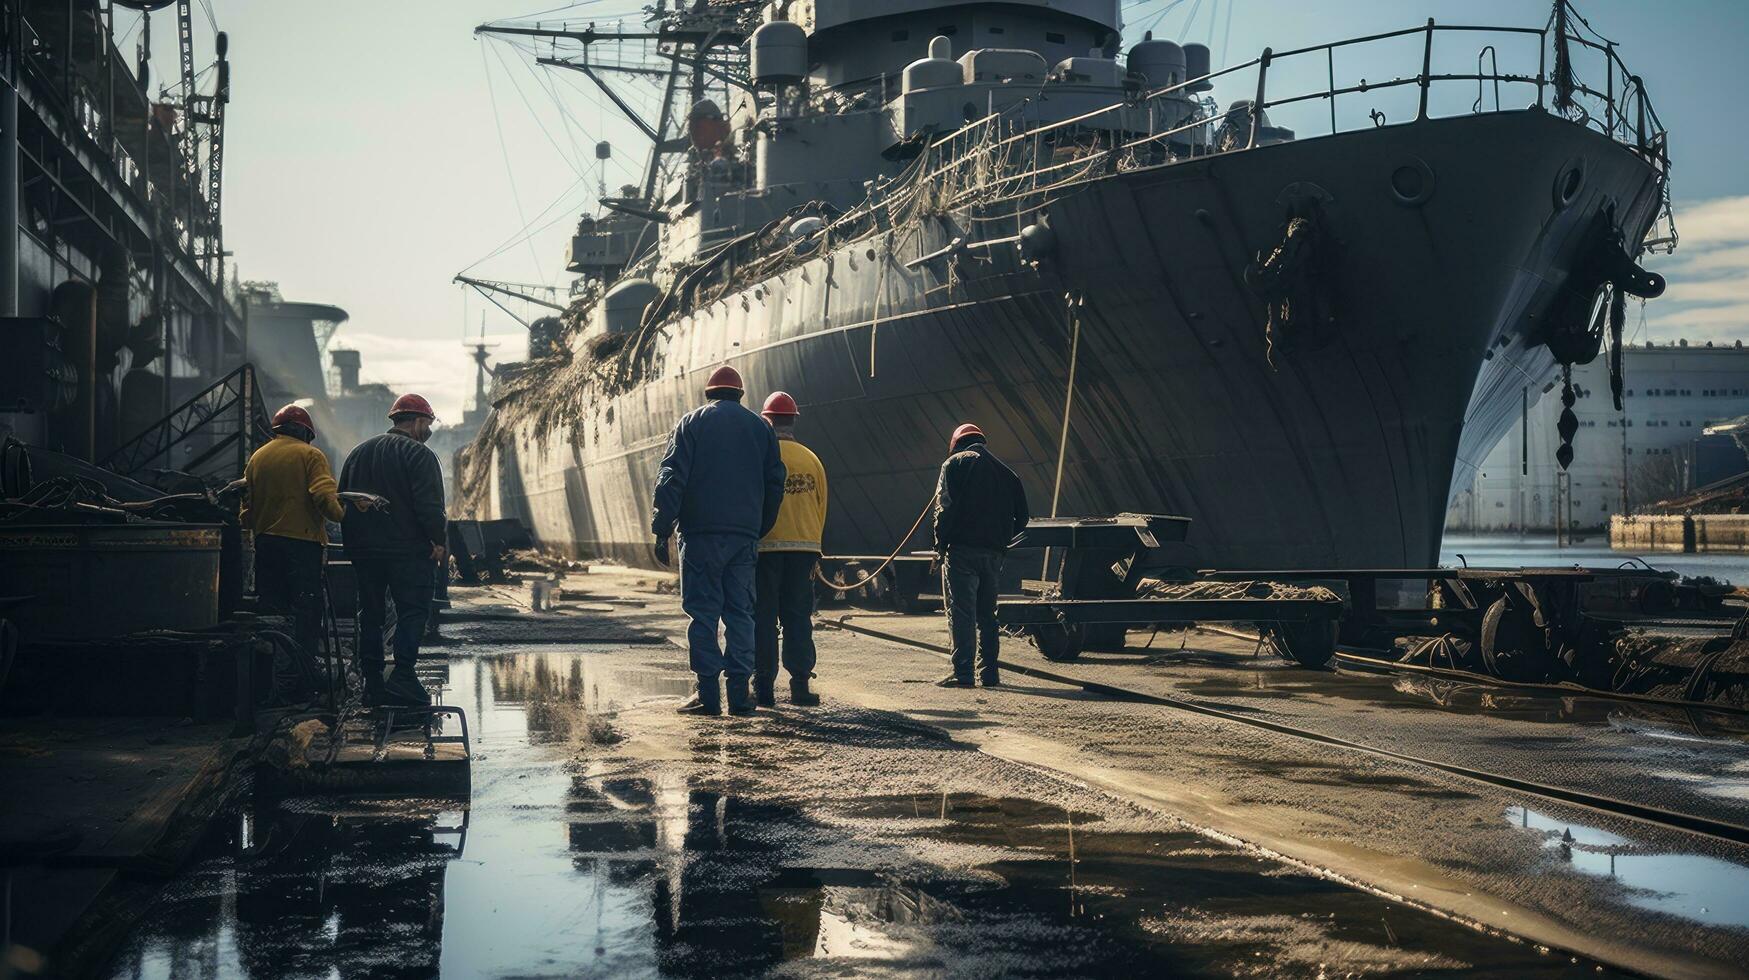 équipage membres travail sur le plate-forme de une bataille navale photo